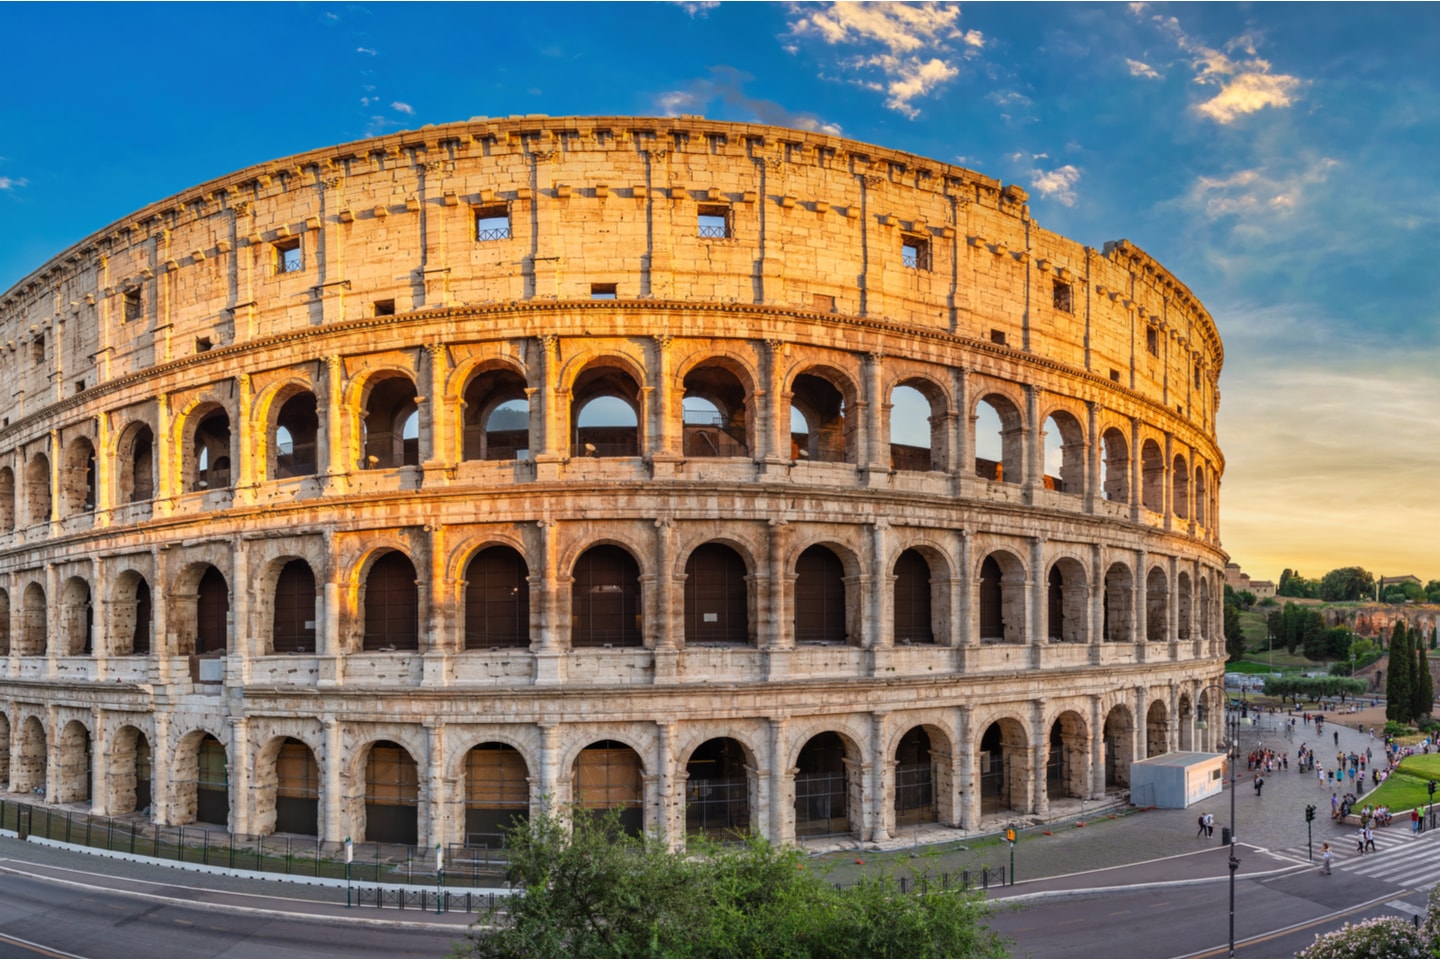 Flyg & boende till Rom med Let's Deal Travel (1 av 7)